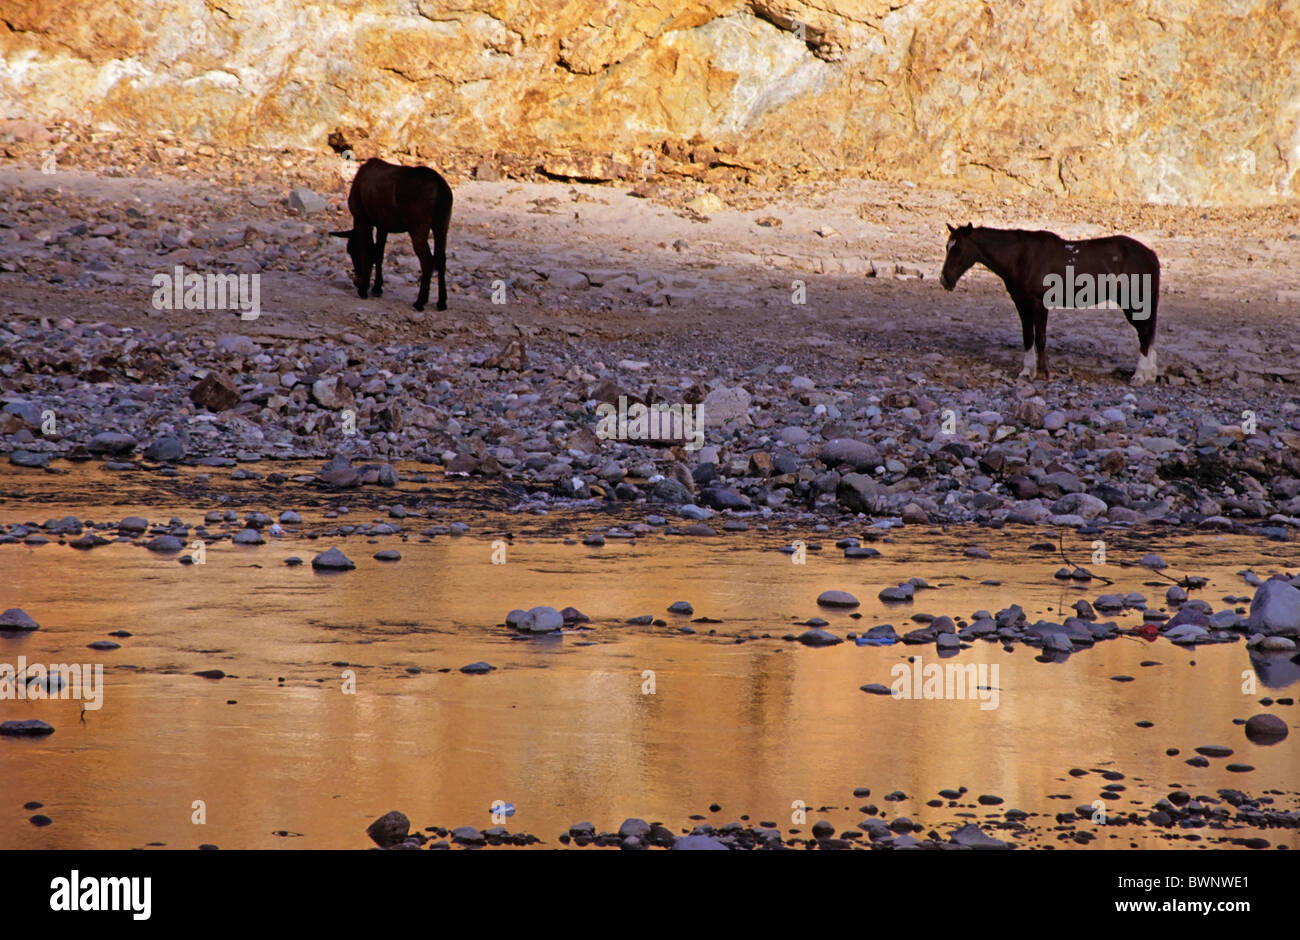 Les chevaux se reposant près d'une rivière au coucher du soleil, Copper Canyon, Batopilas, dans l'État de Chihuahua, au Mexique. Banque D'Images